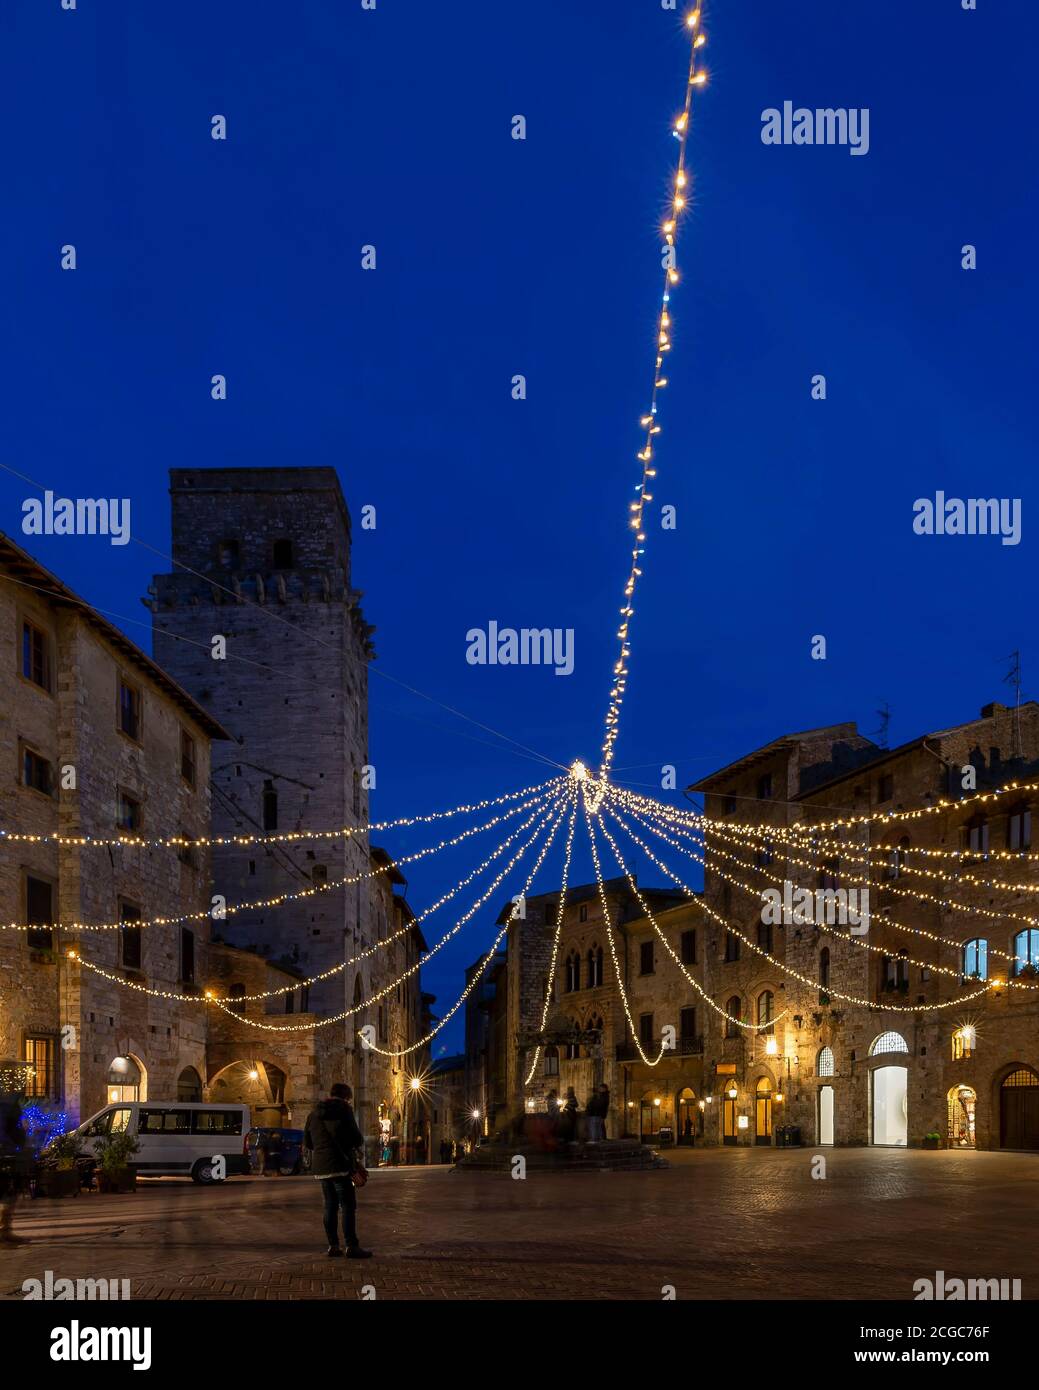 Vista vertical de la Piazza della Cisterna, centro histórico de San Gimignano, Siena, Italia, con las luces del atardecer en la hora azul Foto de stock